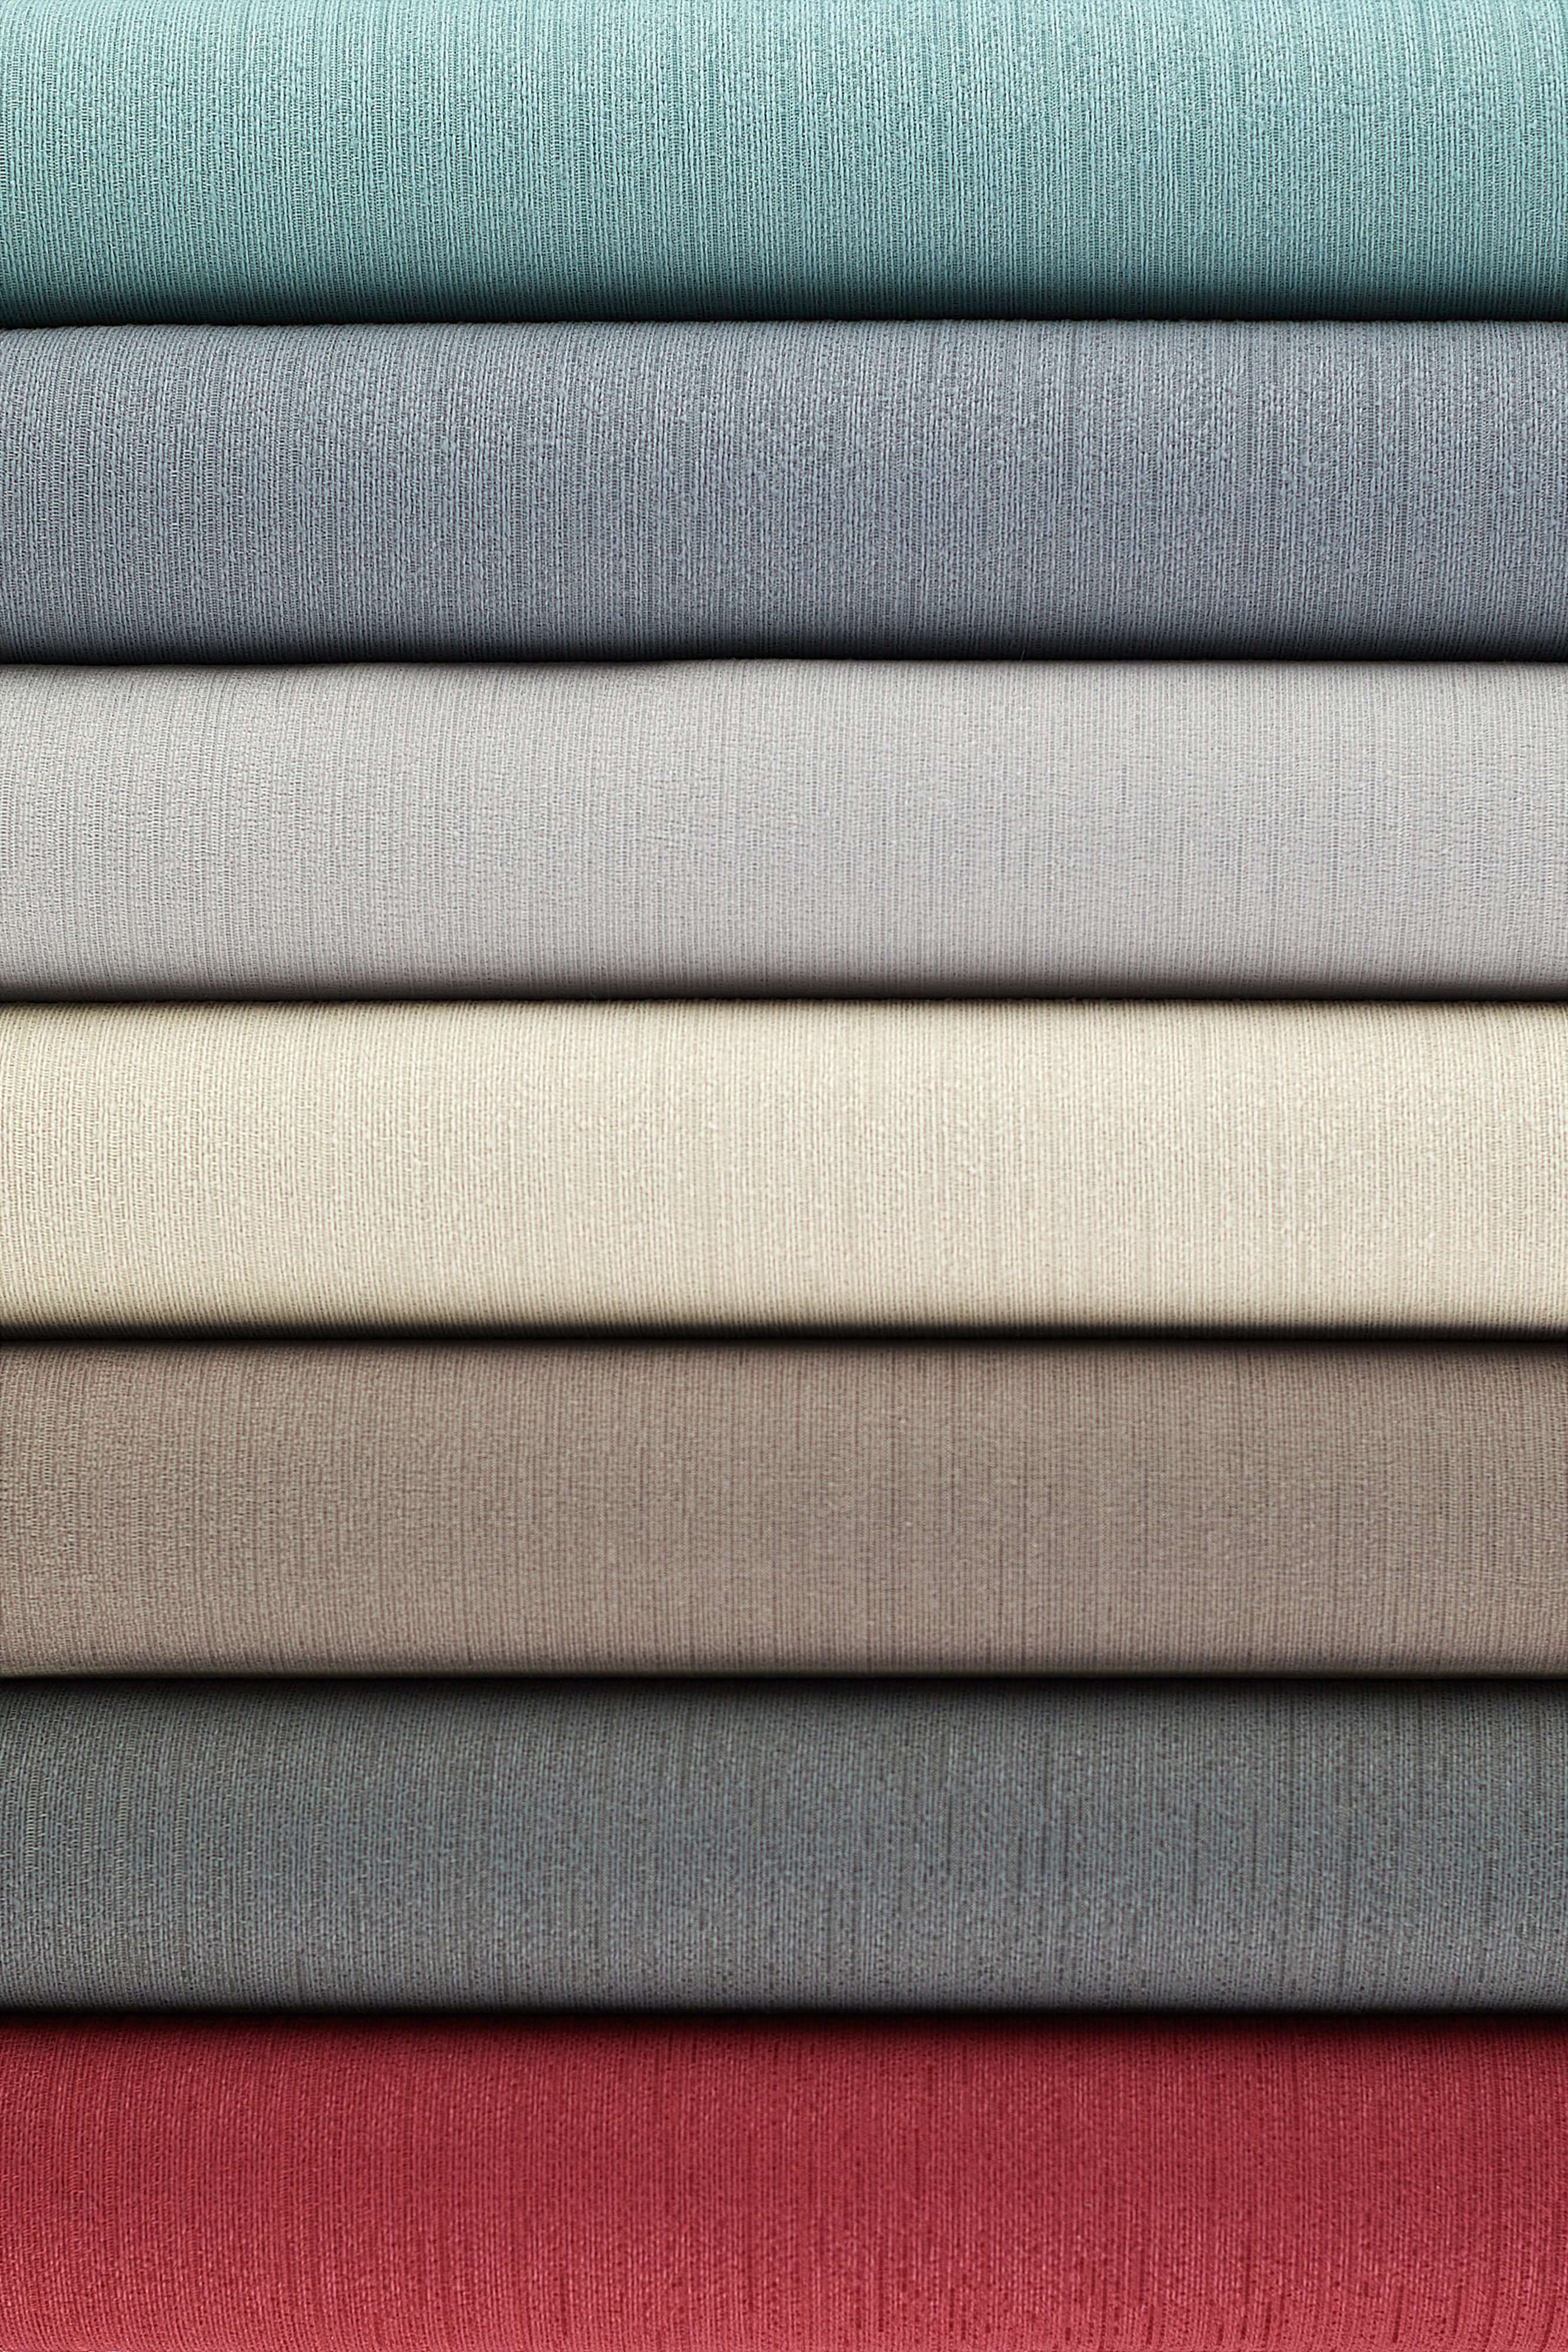 McAlister Textiles Sakai Taupe FR Plain Fabric Fabrics 